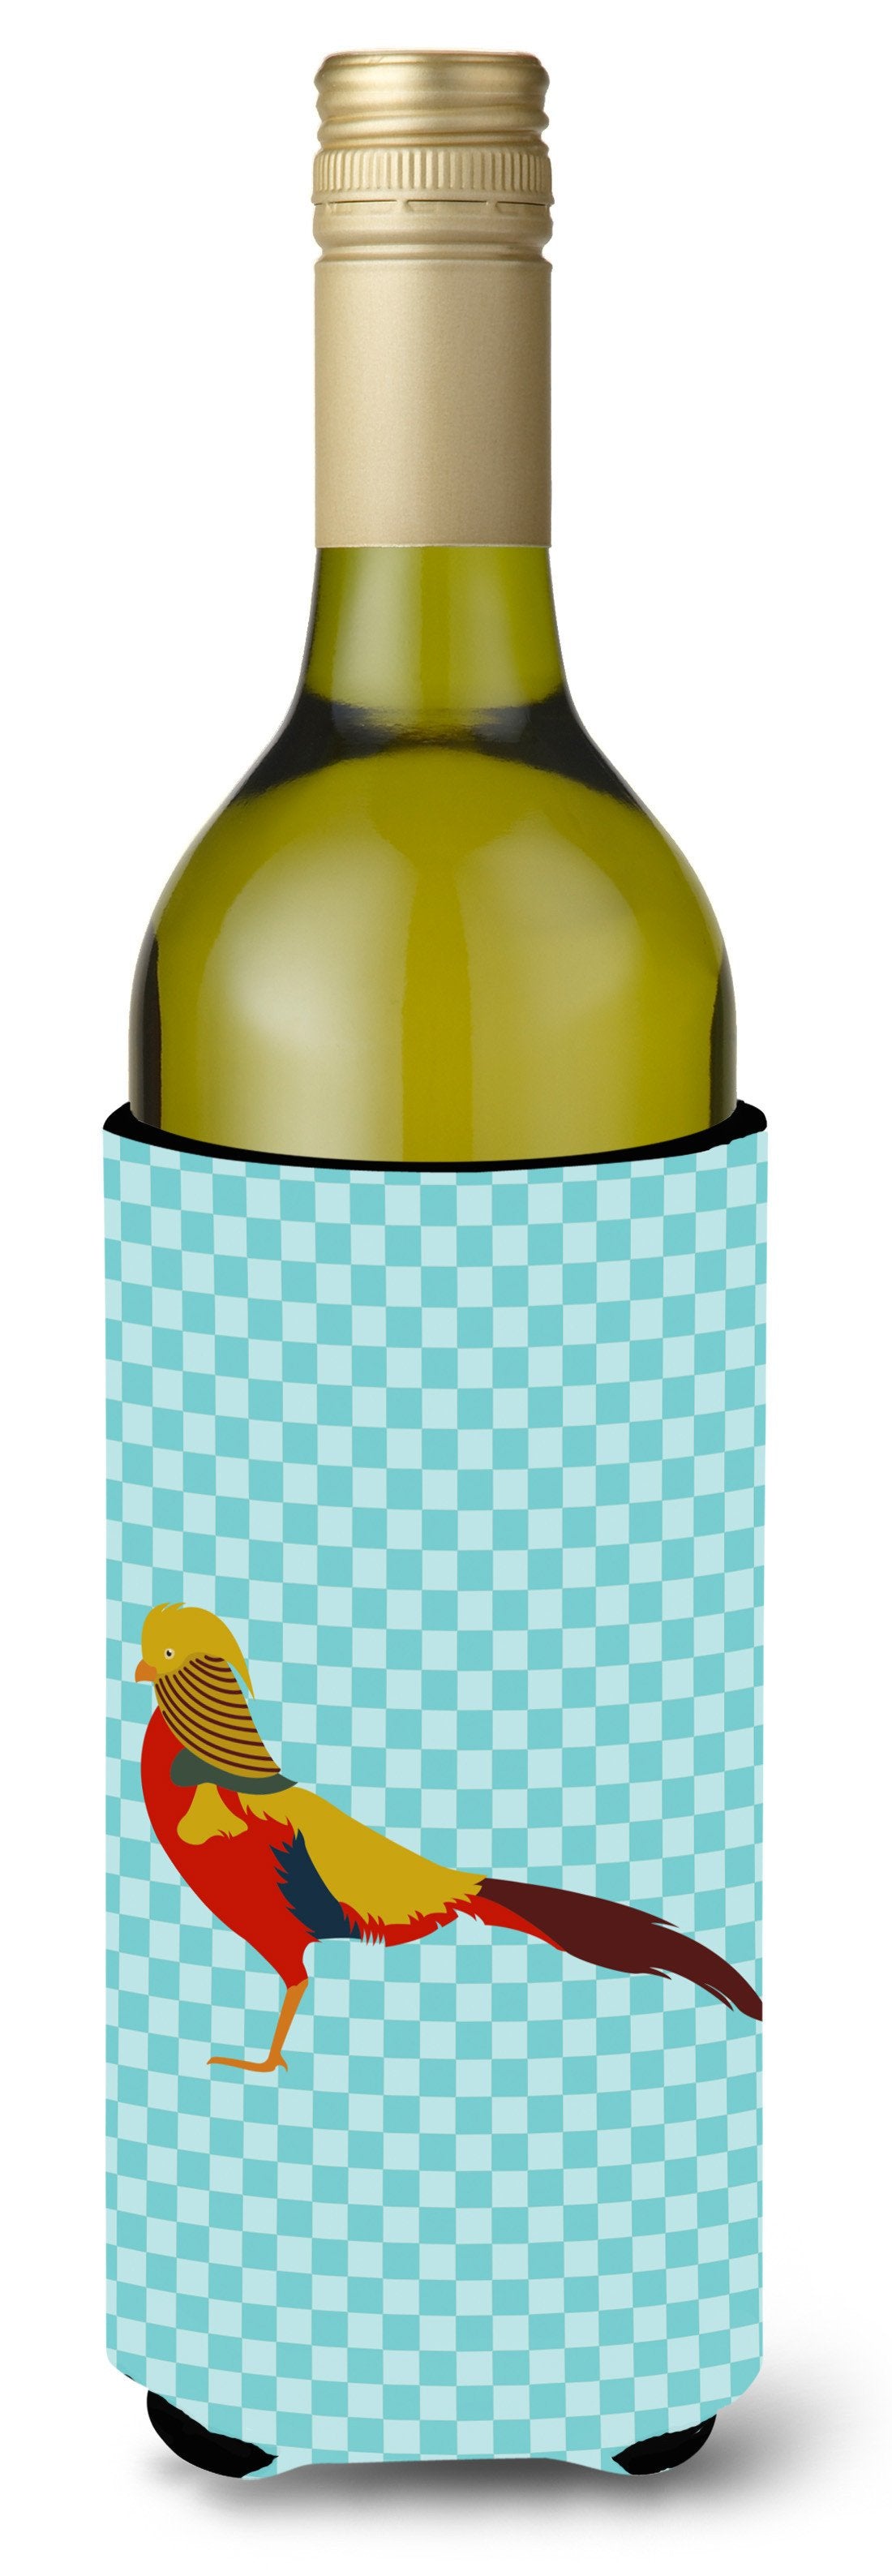 Golden or Chinese Pheasant Blue Check Wine Bottle Beverge Insulator Hugger BB8102LITERK by Caroline's Treasures